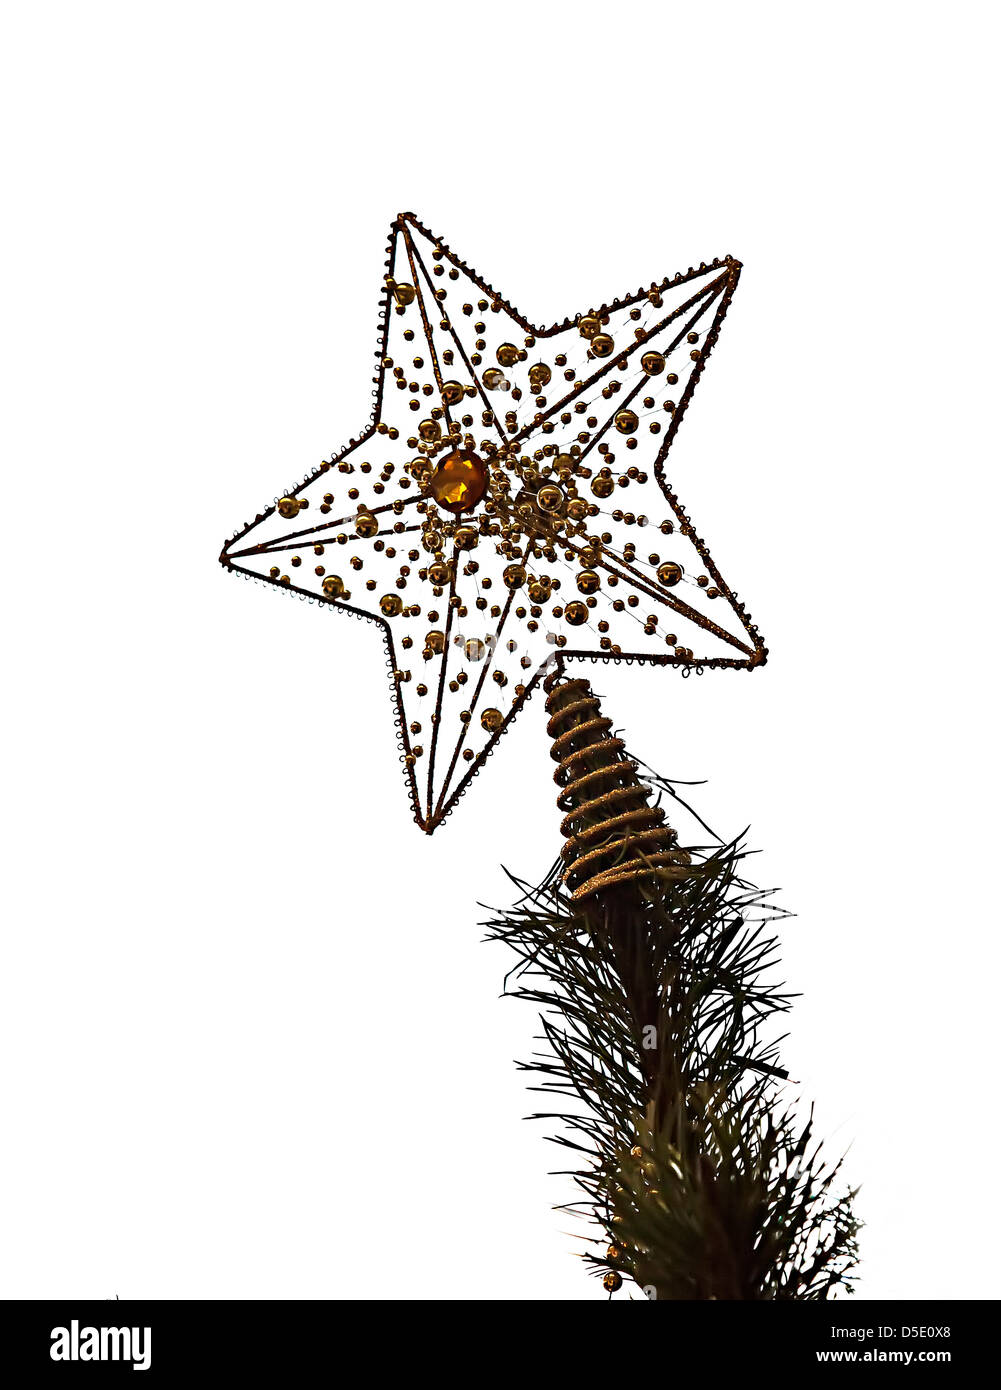 Christmas tree star decoration against white background, UK Stock Photo